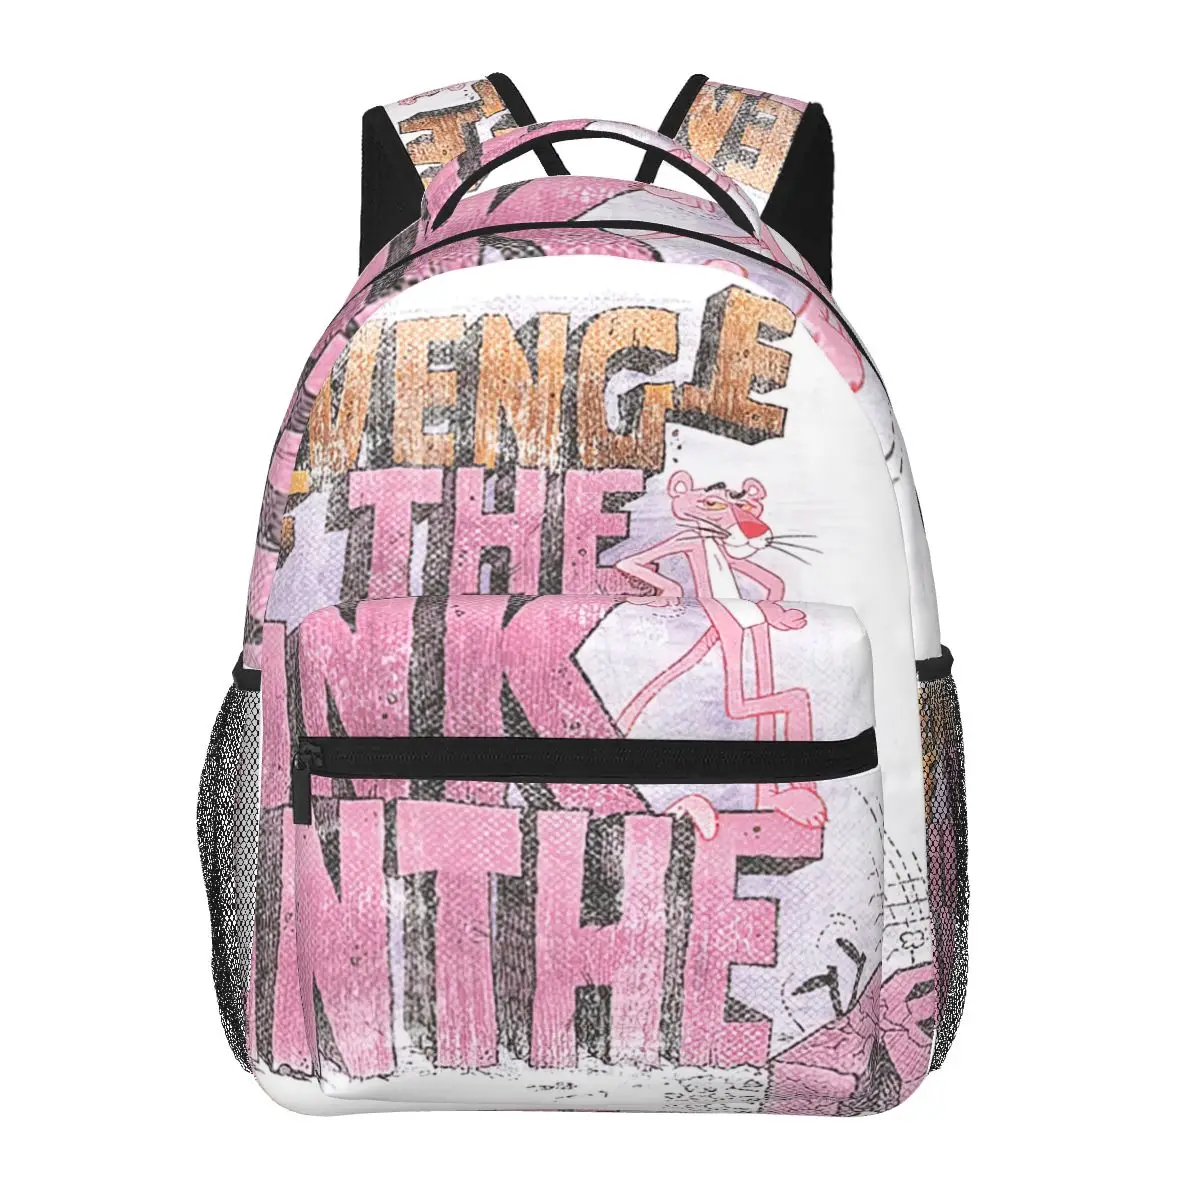 

Pink Panther Vintage Revenge Backpack for Girls Boys Travel RucksackBackpacks for Teenage school bag